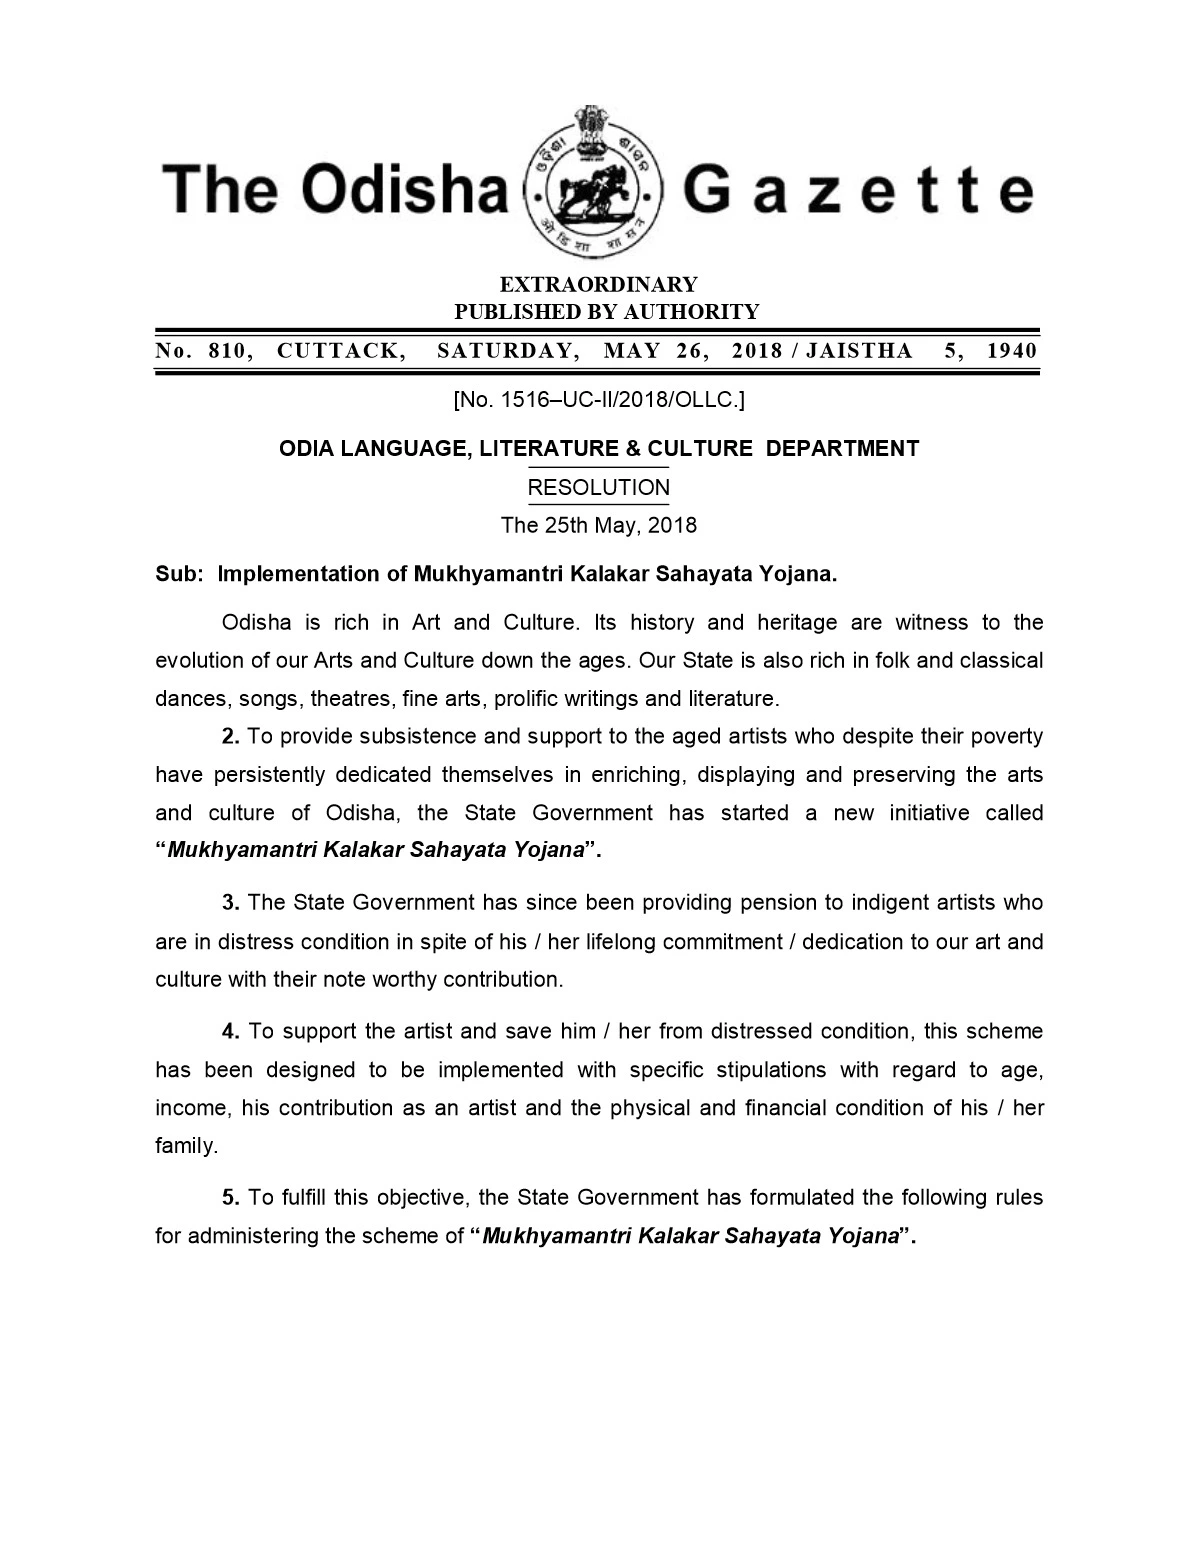 Kalakar Bhata Yojana Scheme Odisha